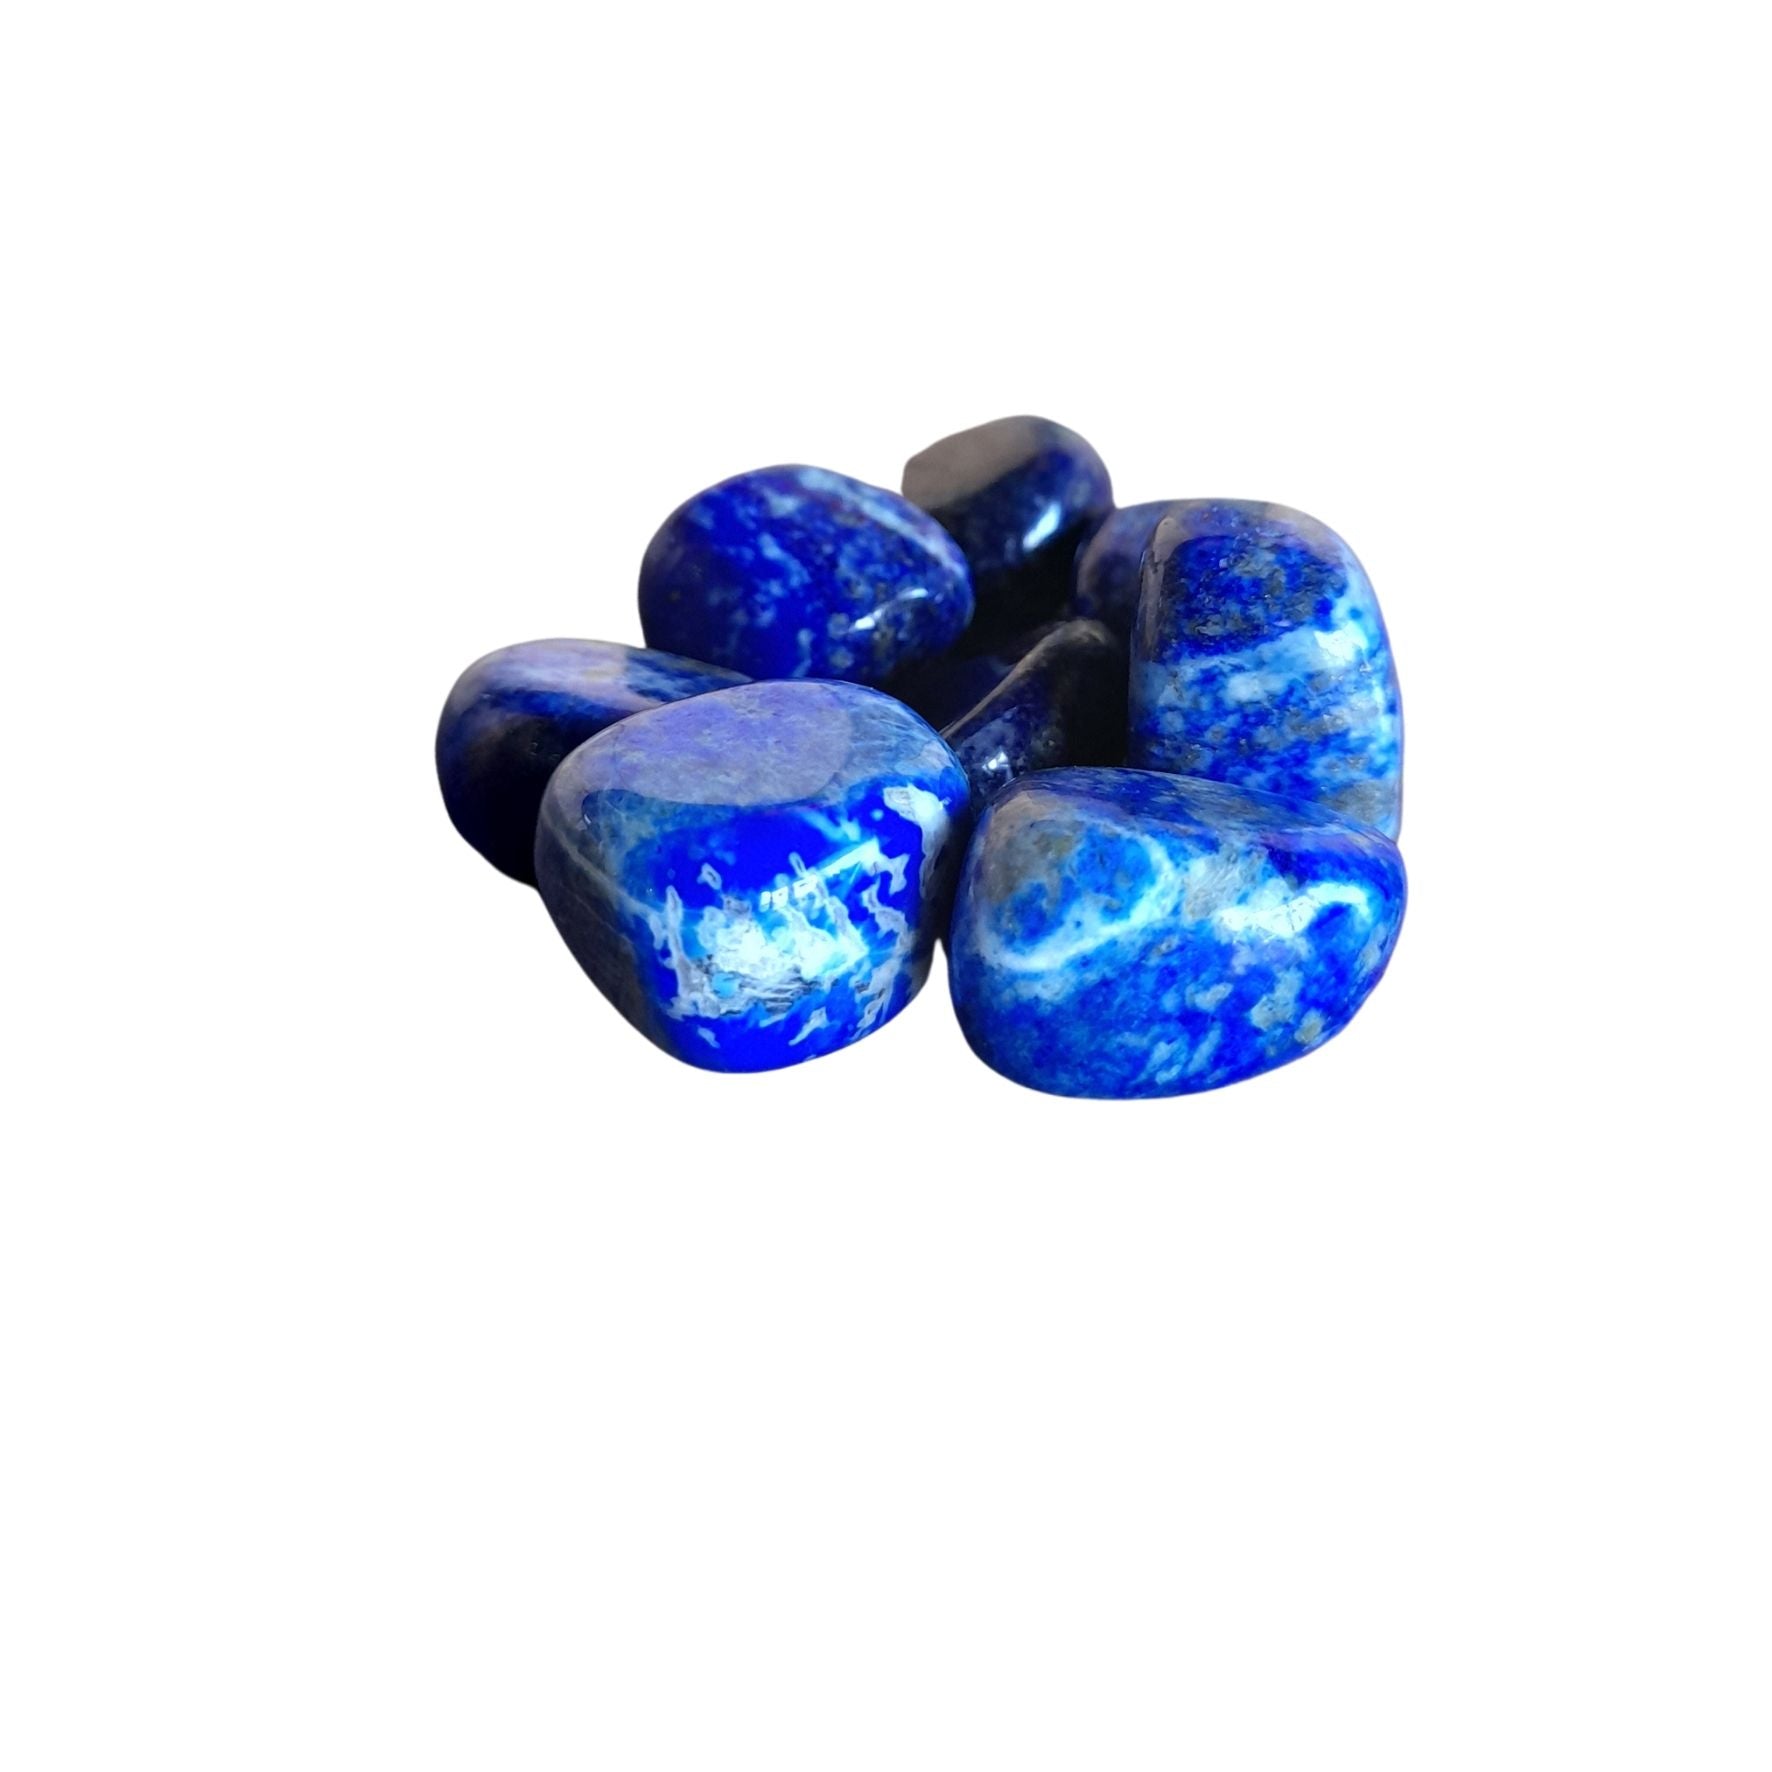 Lapis Lazuli ~ Tumbled stone (each)